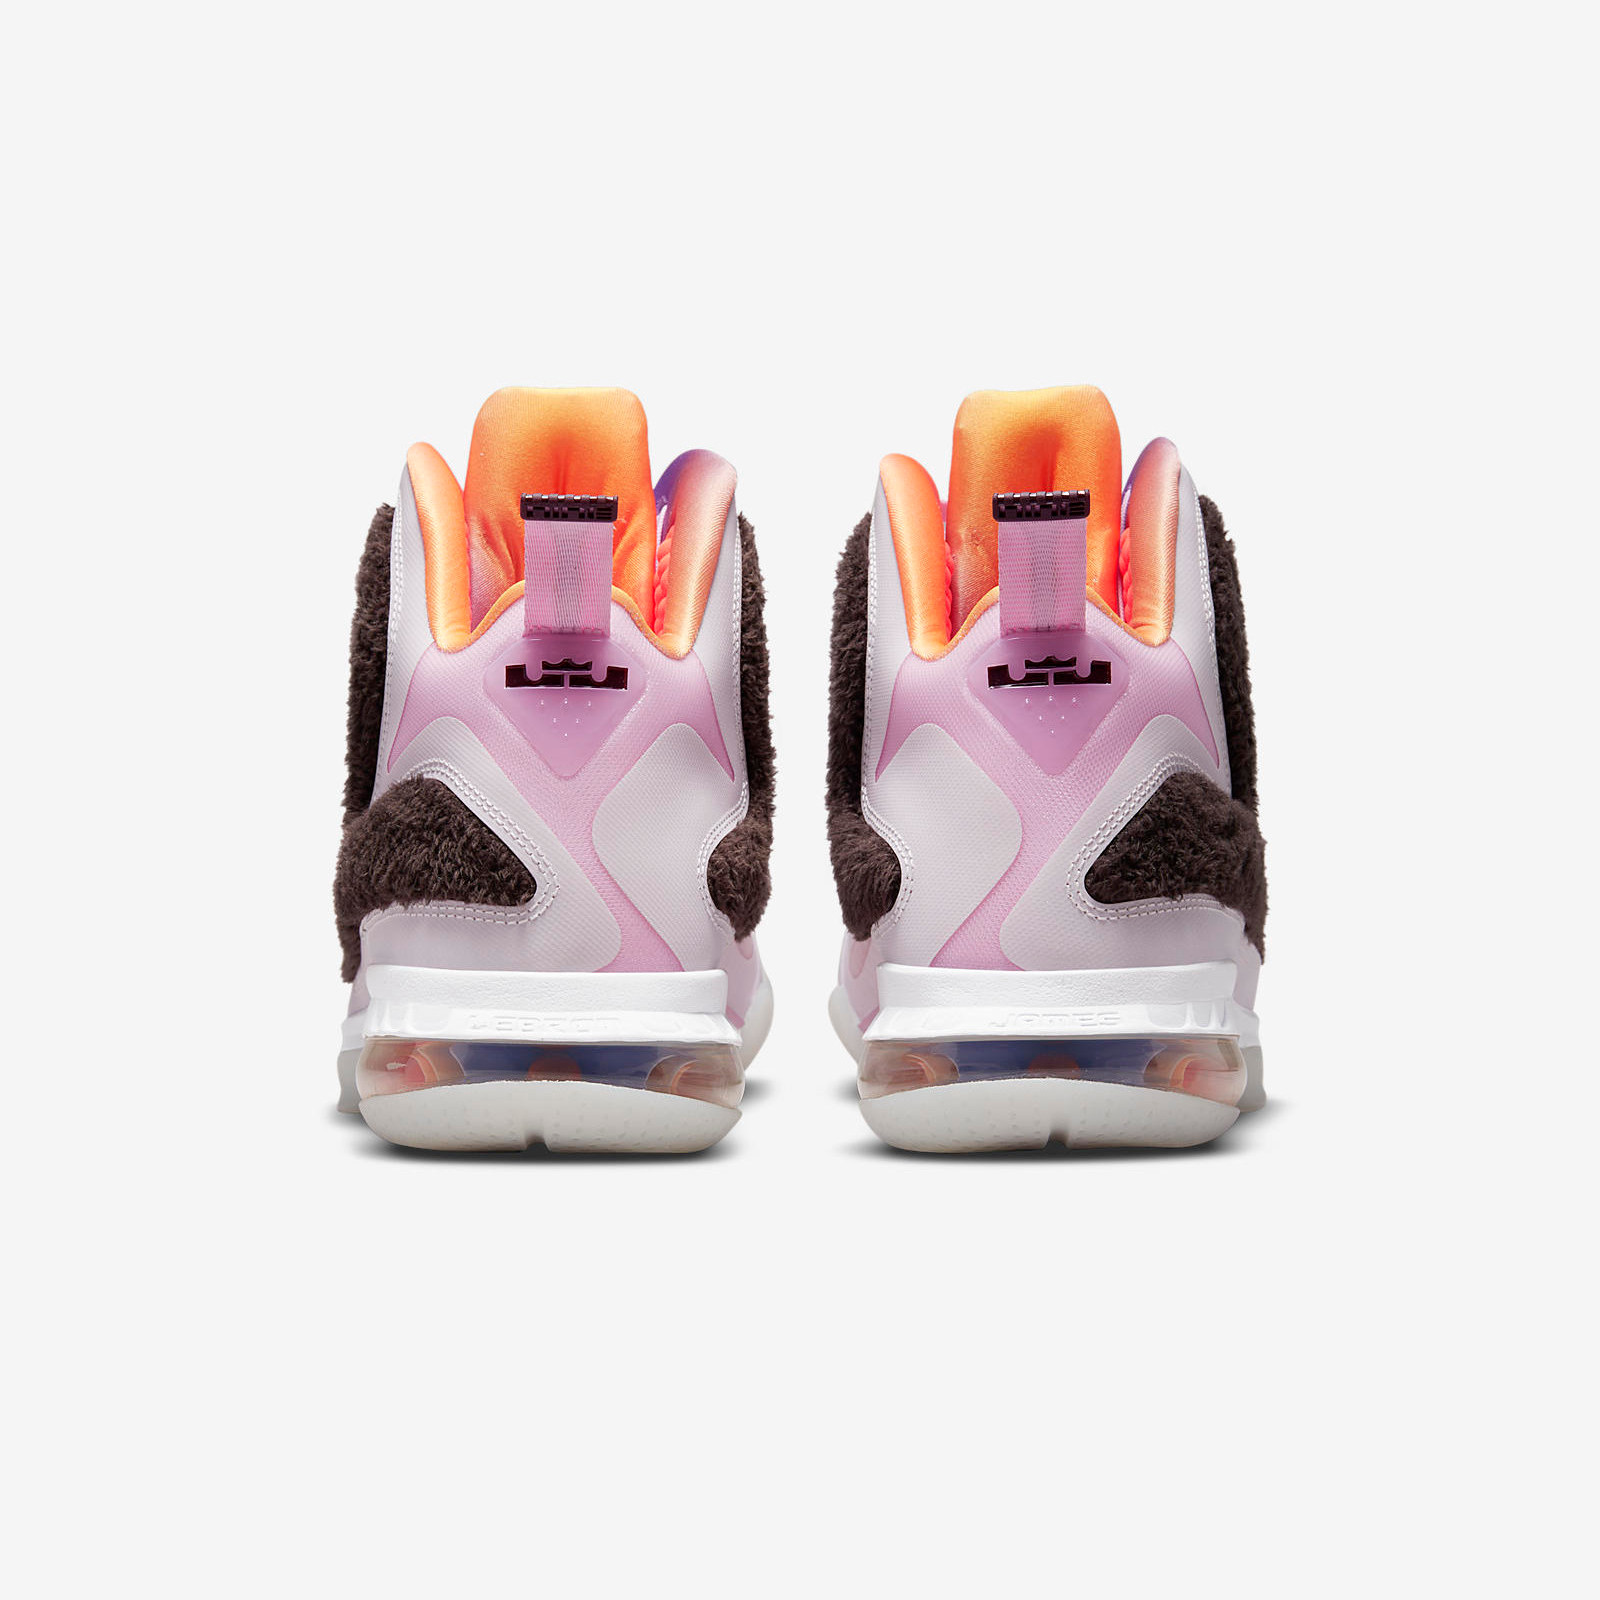 Nike LeBron 9
« Regal Pink »